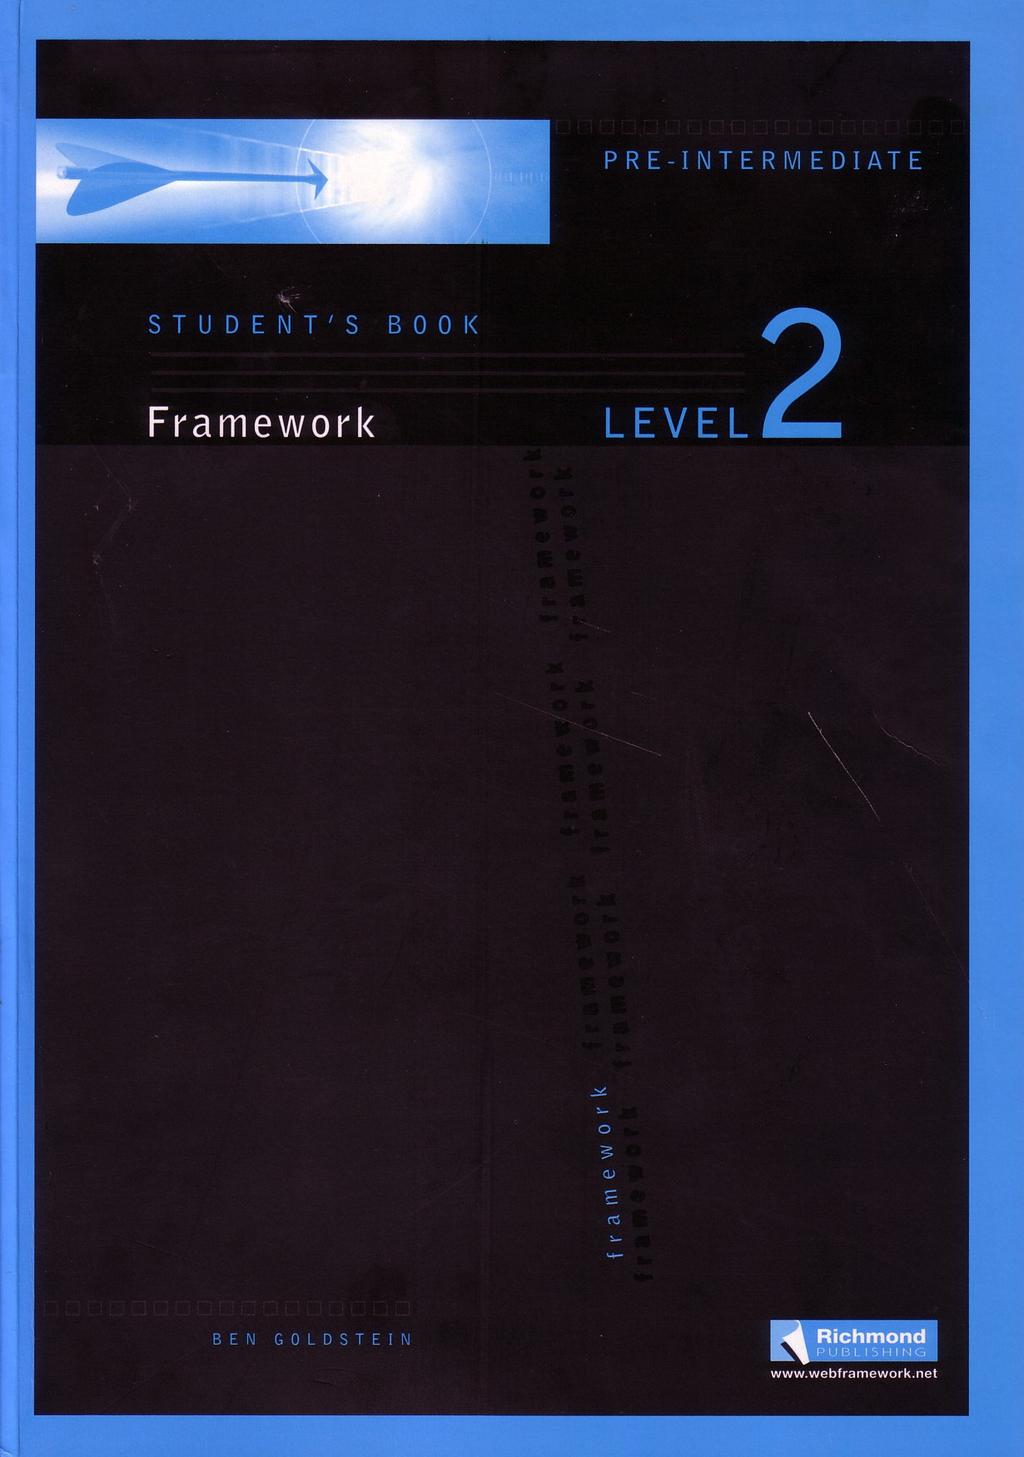 Metodologia 95 o nível do livro aumenta mais a flecha se aproxima do círculo, que mais parece um alvo ao qual a flecha pretende atingir.